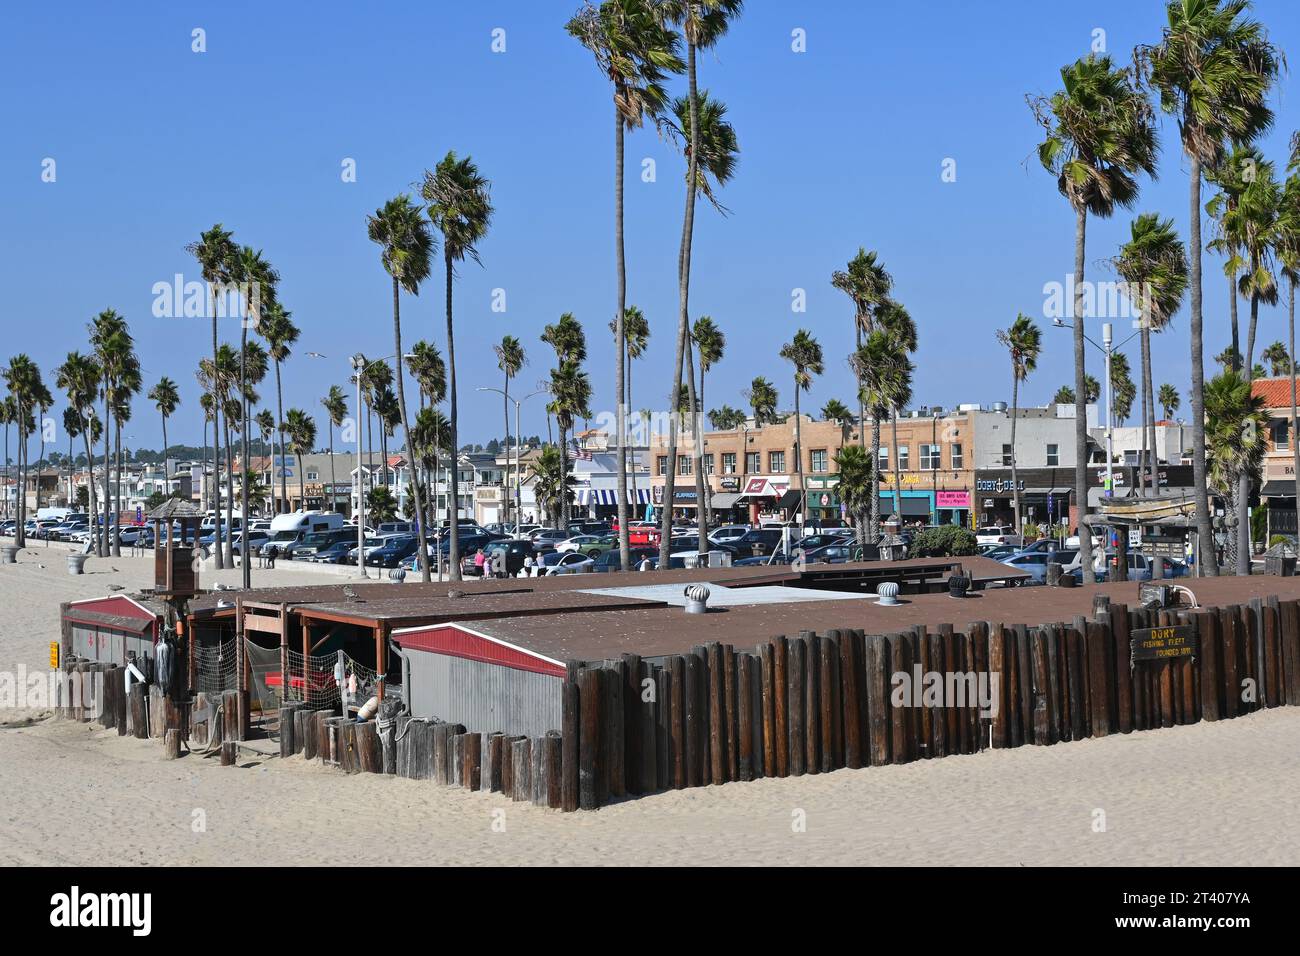 NEWPORT BEACH, CALIFORNIA - 26 ottobre 2023: Il Dory Fishing Fleet and Market è una cooperativa di pesca sulla spiaggia situata sul molo, fondata nel 1891. Foto Stock